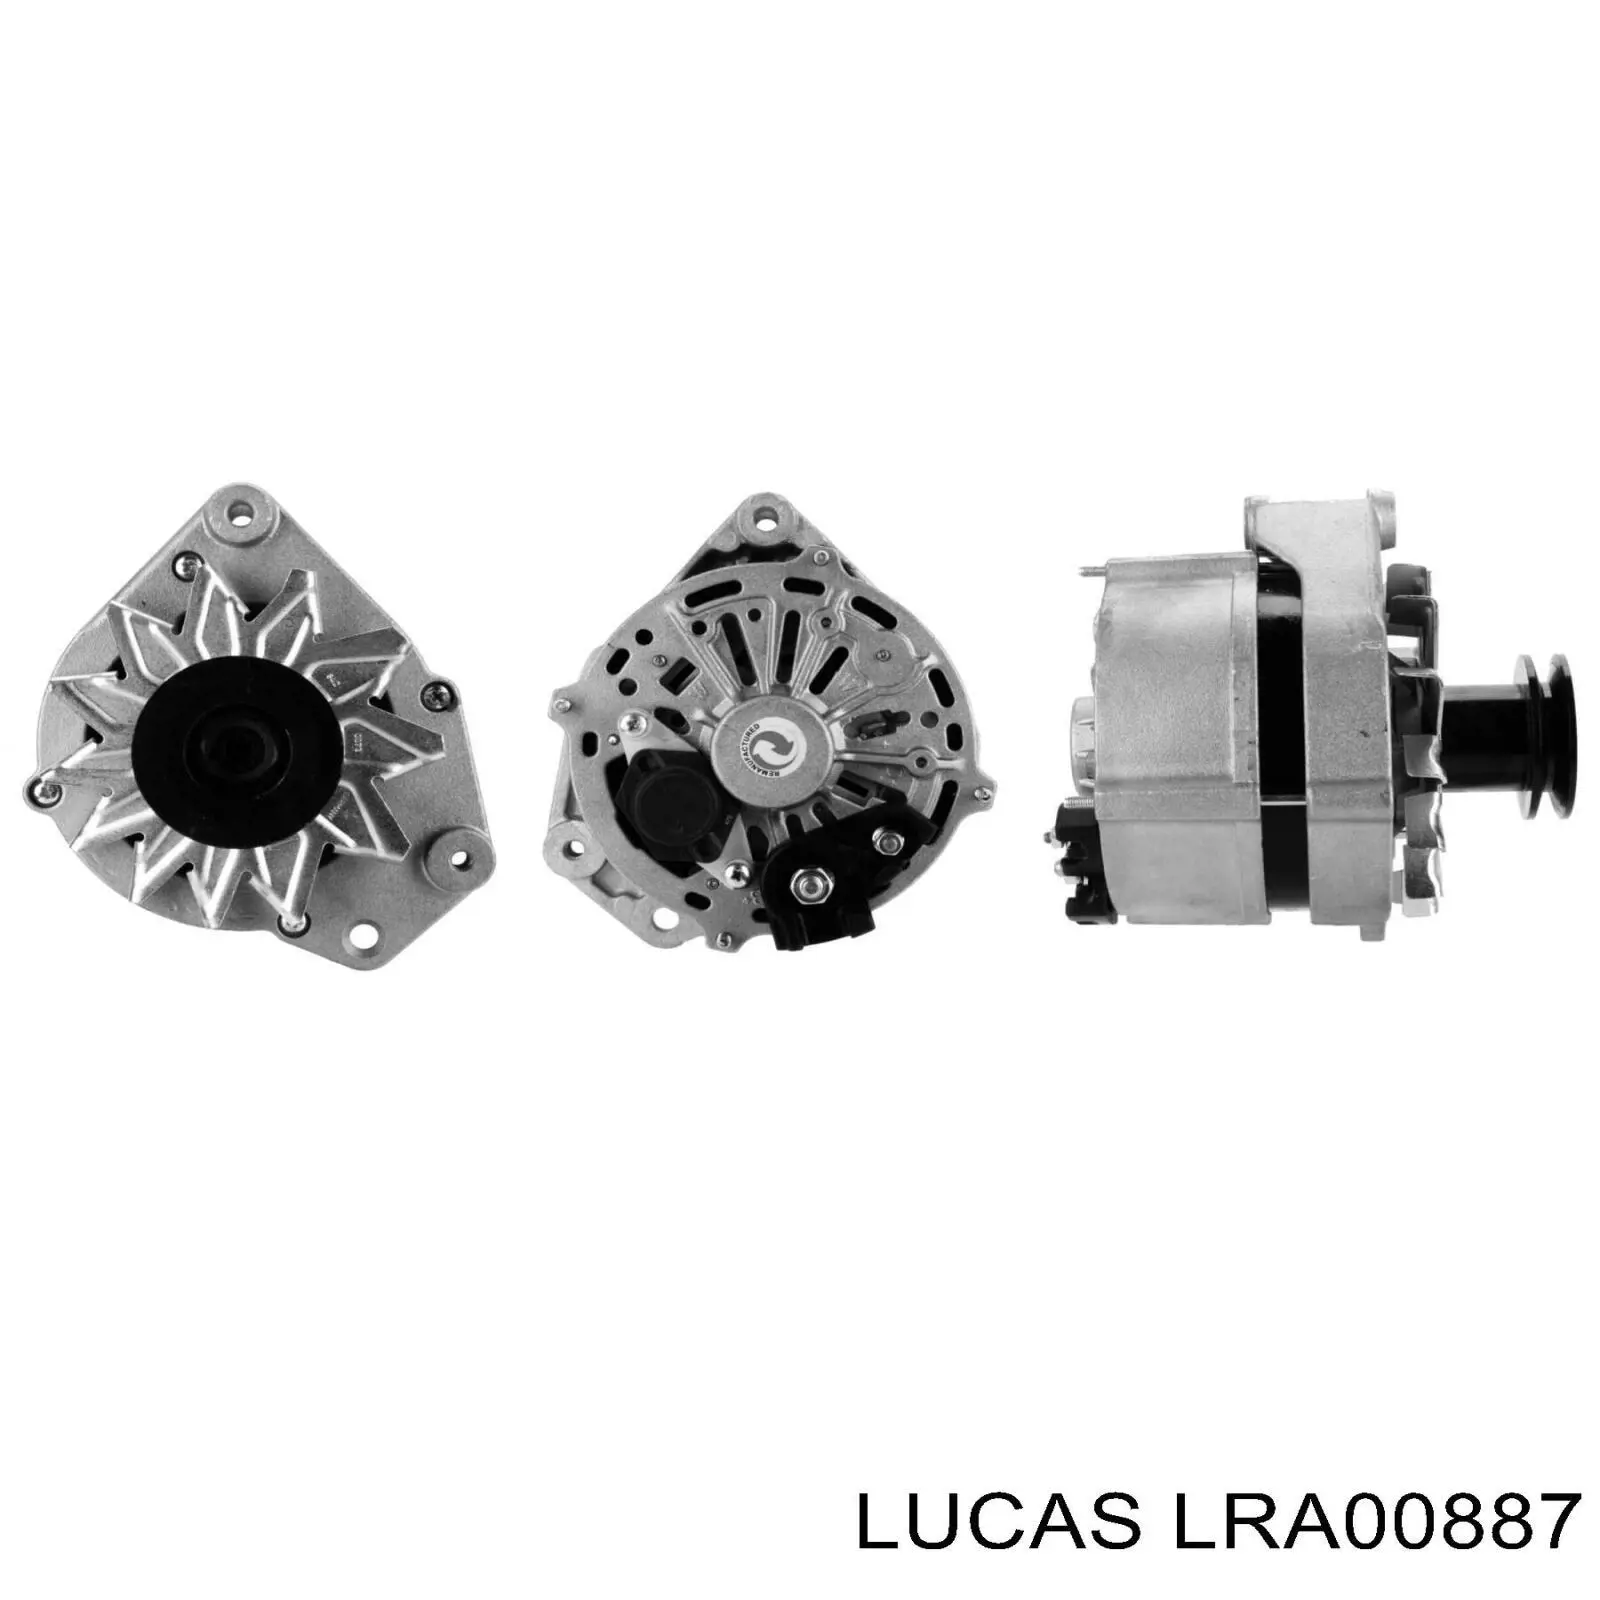 LRA00887 Lucas генератор